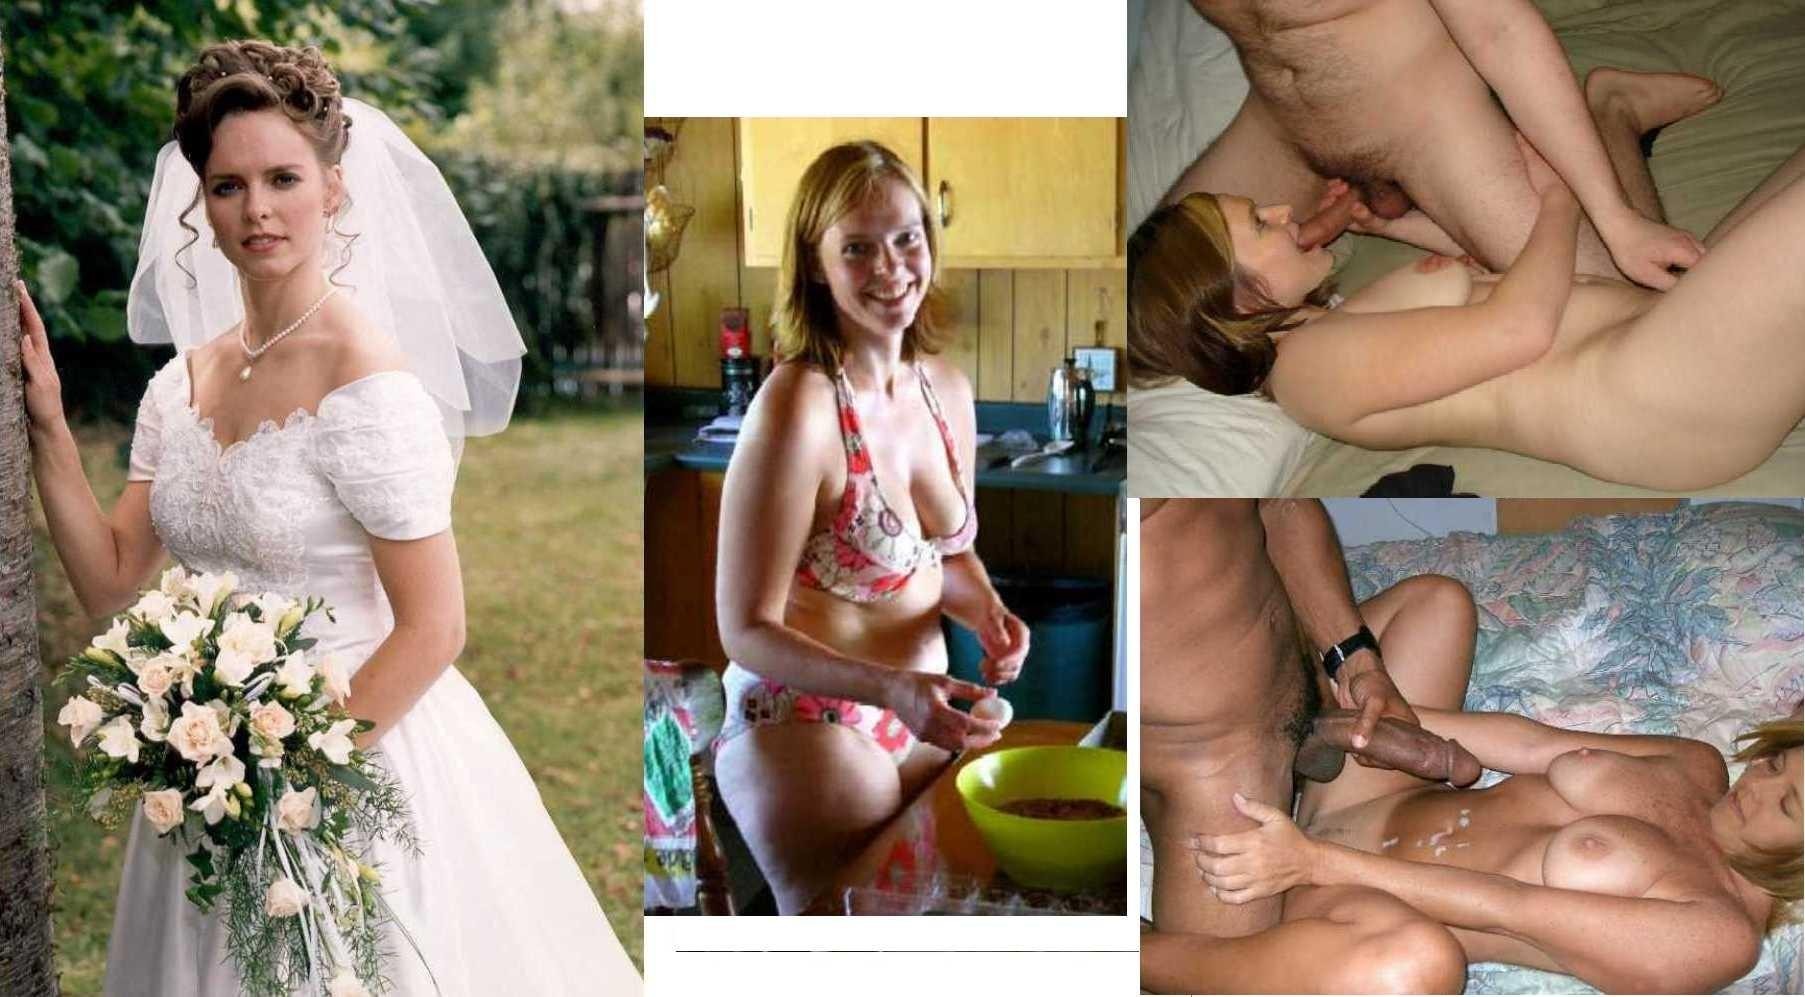 https://xhamster.monster/uploads/posts/2023-04/1682143762_xhamster-monster-p-porn-clothed-woman-and-naked-husband-32.jpg